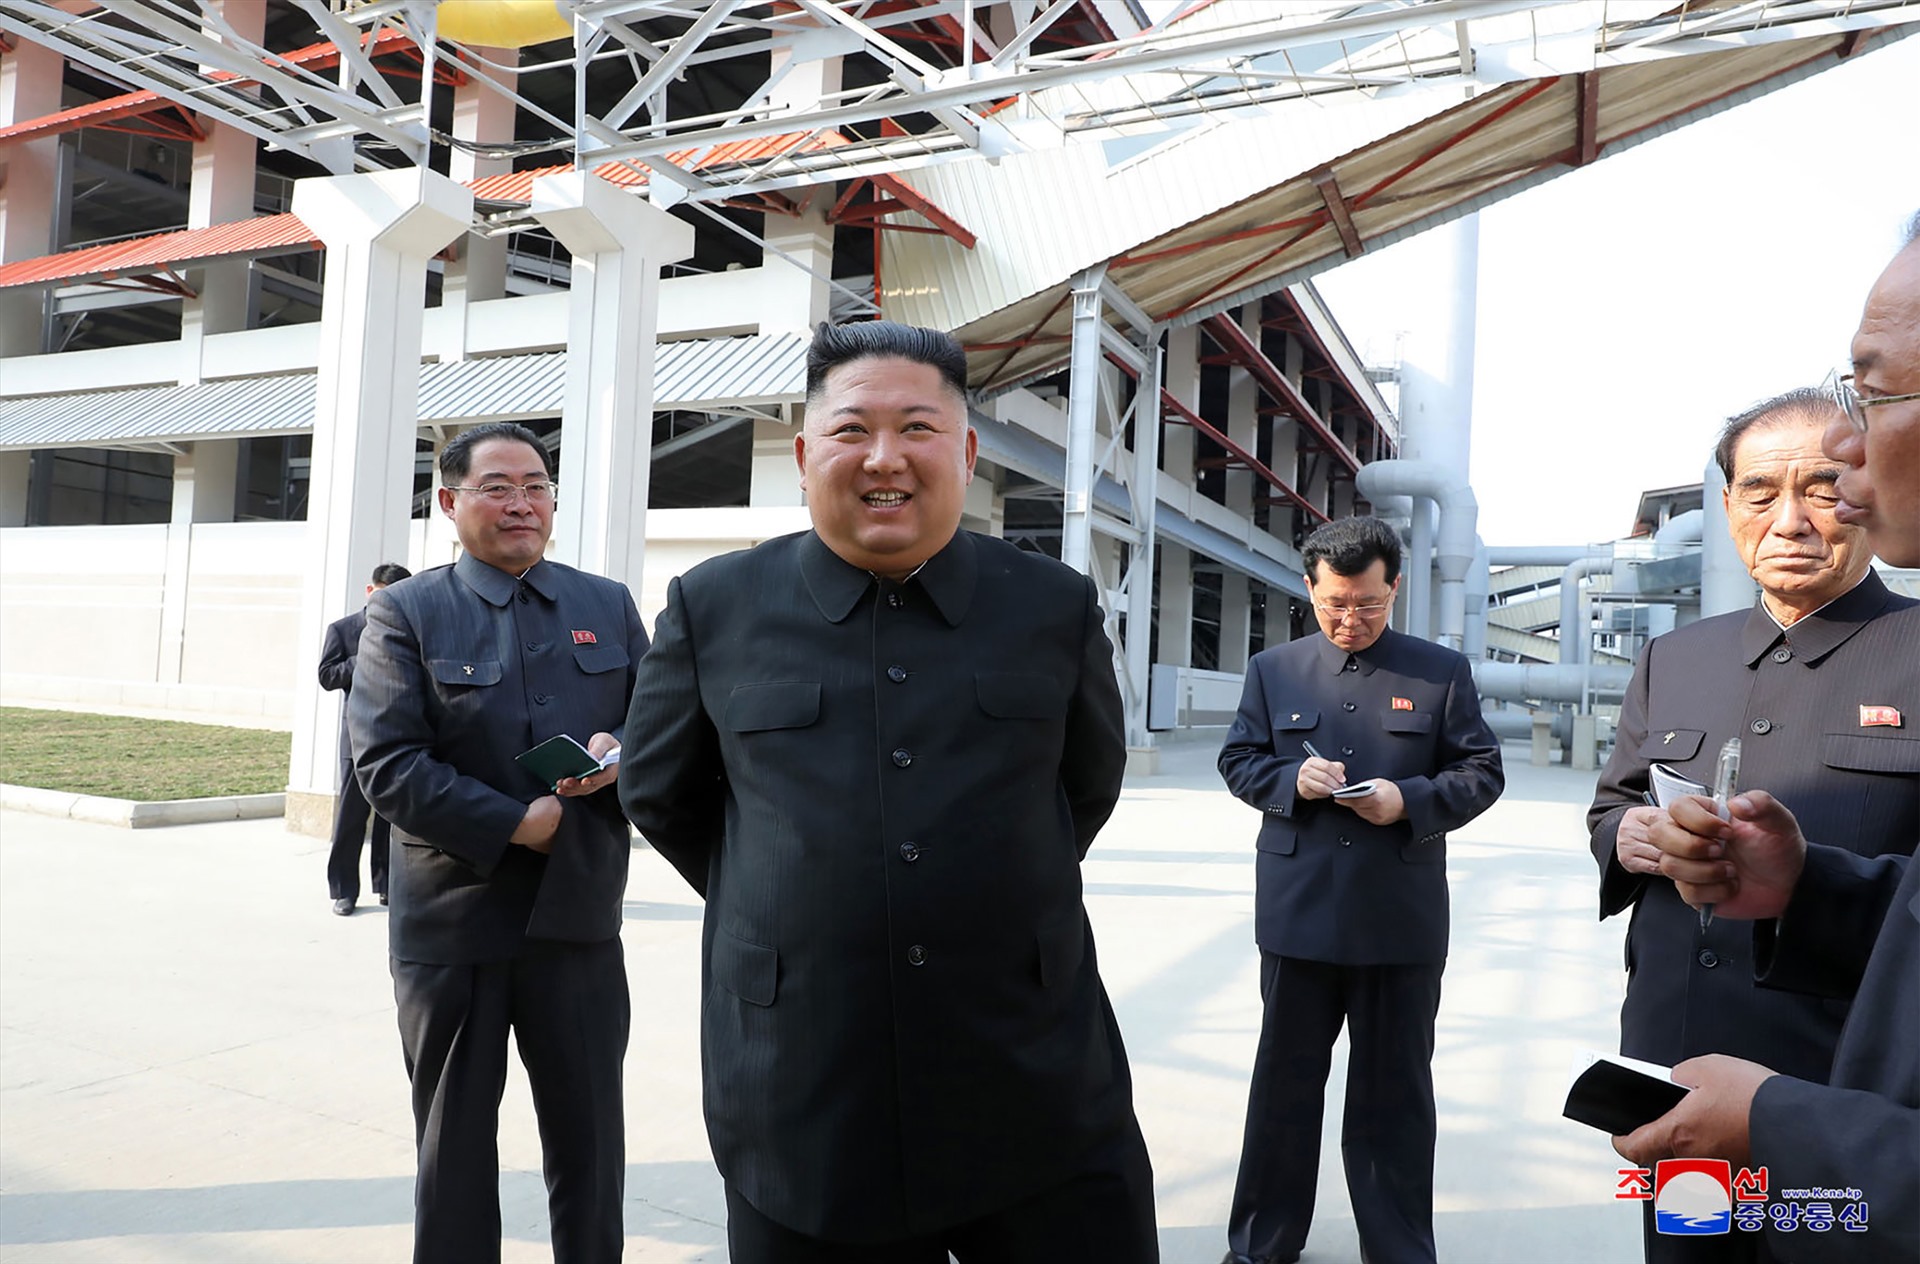 Nhà lãnh đạo Triều Tiên Kim Jong-un xuất hiện trở lại sau những đồn đoán về sức khỏe khi tham dự sự kiện tại nhà máy phân bón gần Bình Nhưỡng hôm 1.5. Ảnh: AFP.